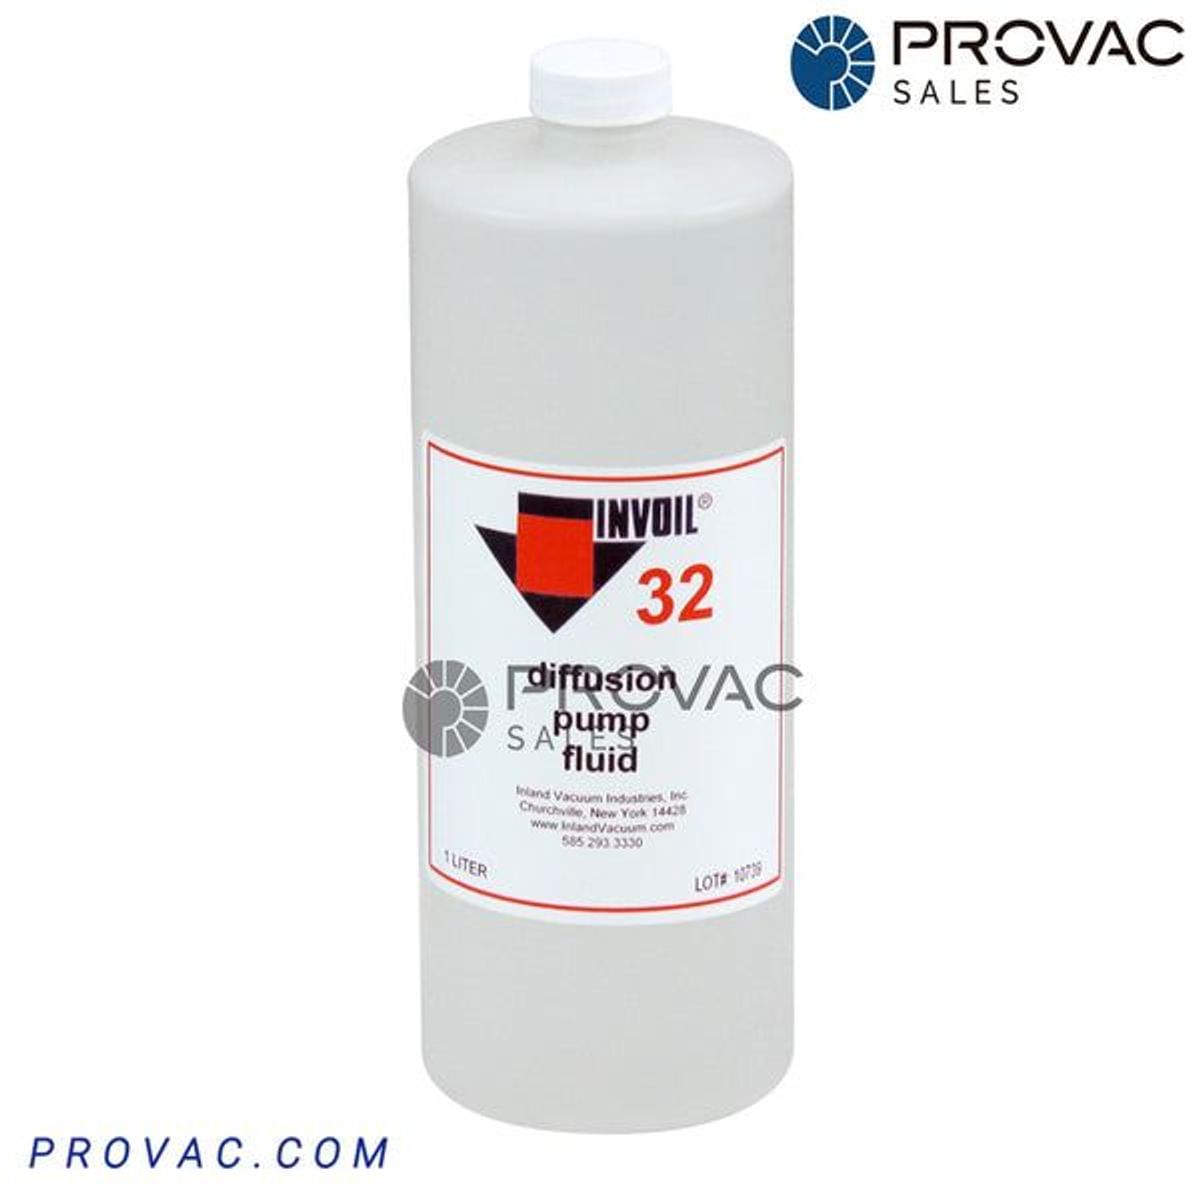 Invoil 32 Diffusion Pump Oil Image 1